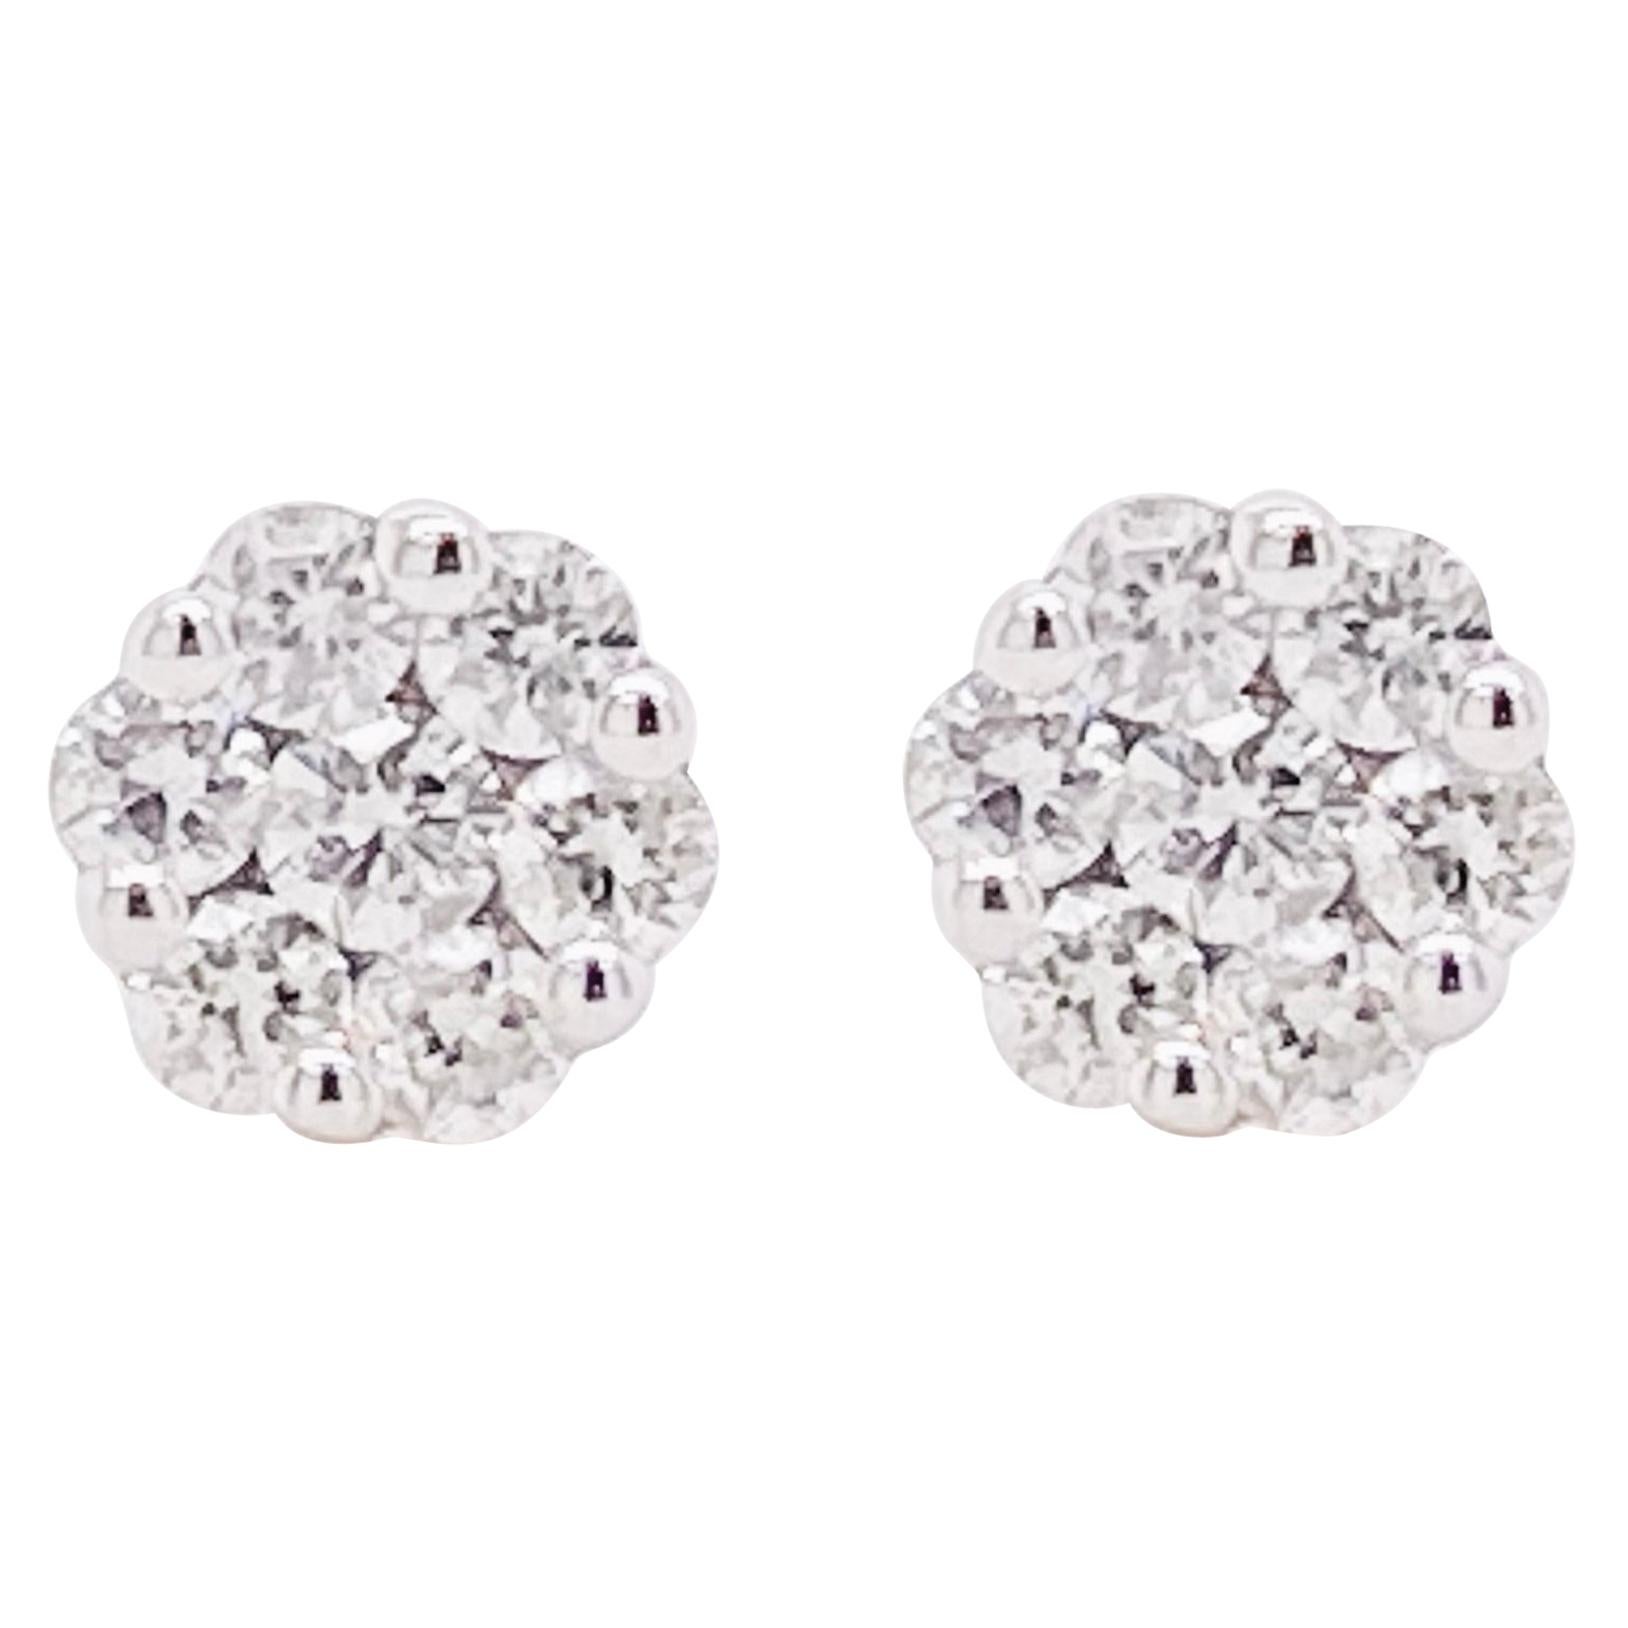 Diamond Cluster Earrings, White Gold Diamond Stud Earrings, Dainty Earrings